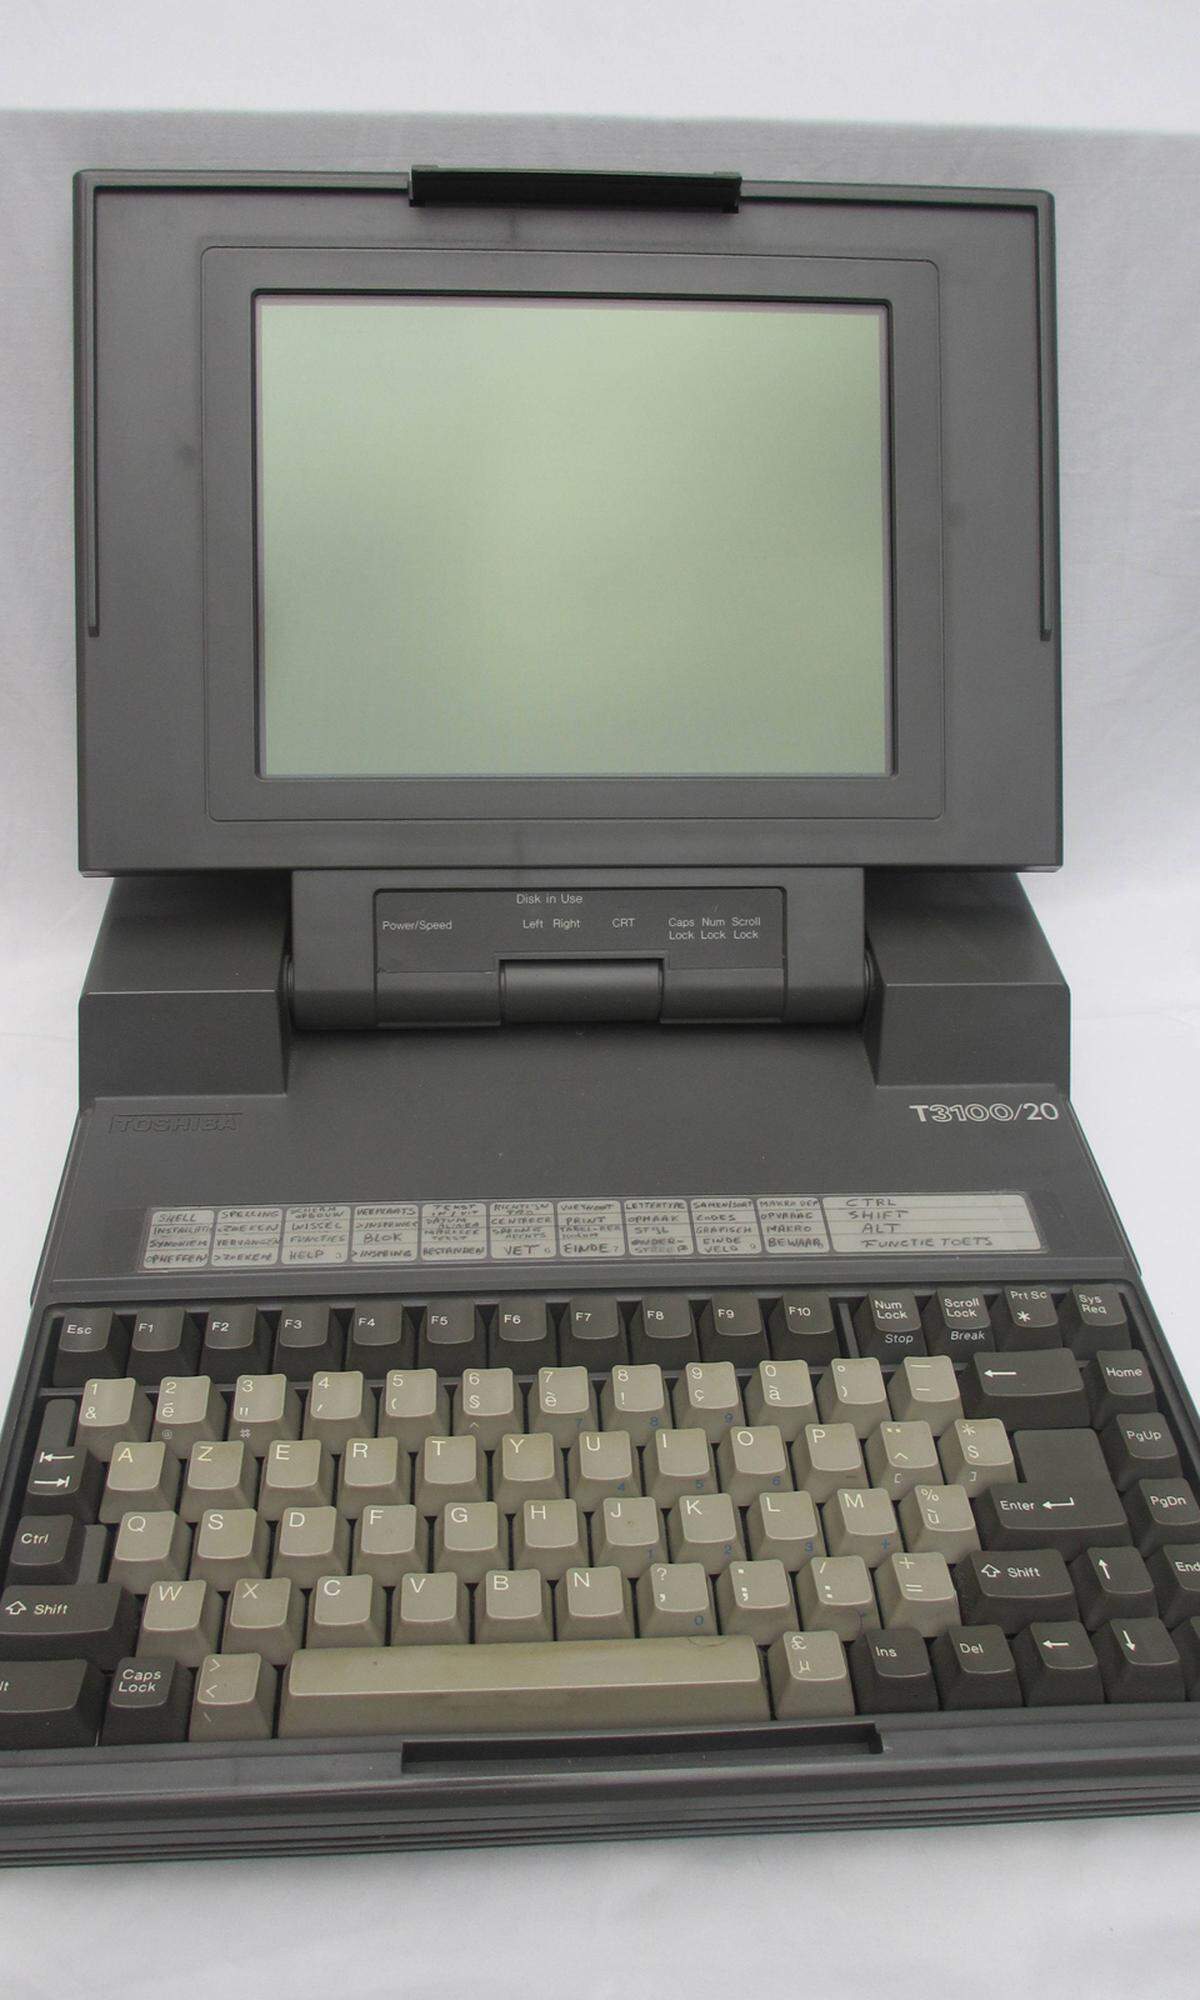 Bevor es aber wirklich klein werden konnte, musste in den Bereich der tragbaren Rechner noch viel Entwicklung und Zeit investiert werden. Mit dem T3100 von Toshiba begann offiziell die Laptop-Ära. Das 2,5 Kilogramm Leichtgewicht hatte für damalige Verhältnisse eine riesige 20-Megabyte-Festplatte und einen ein Megabyte großen Arbeitsspeicher.